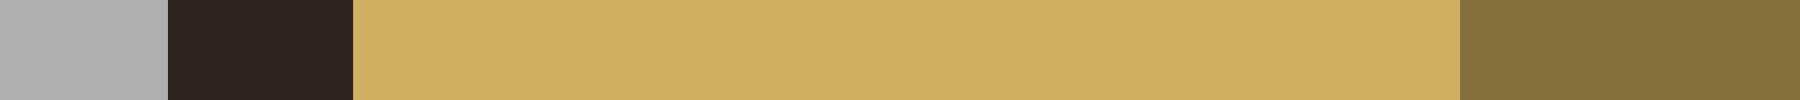 Black Hills Cougar Classic color scheme